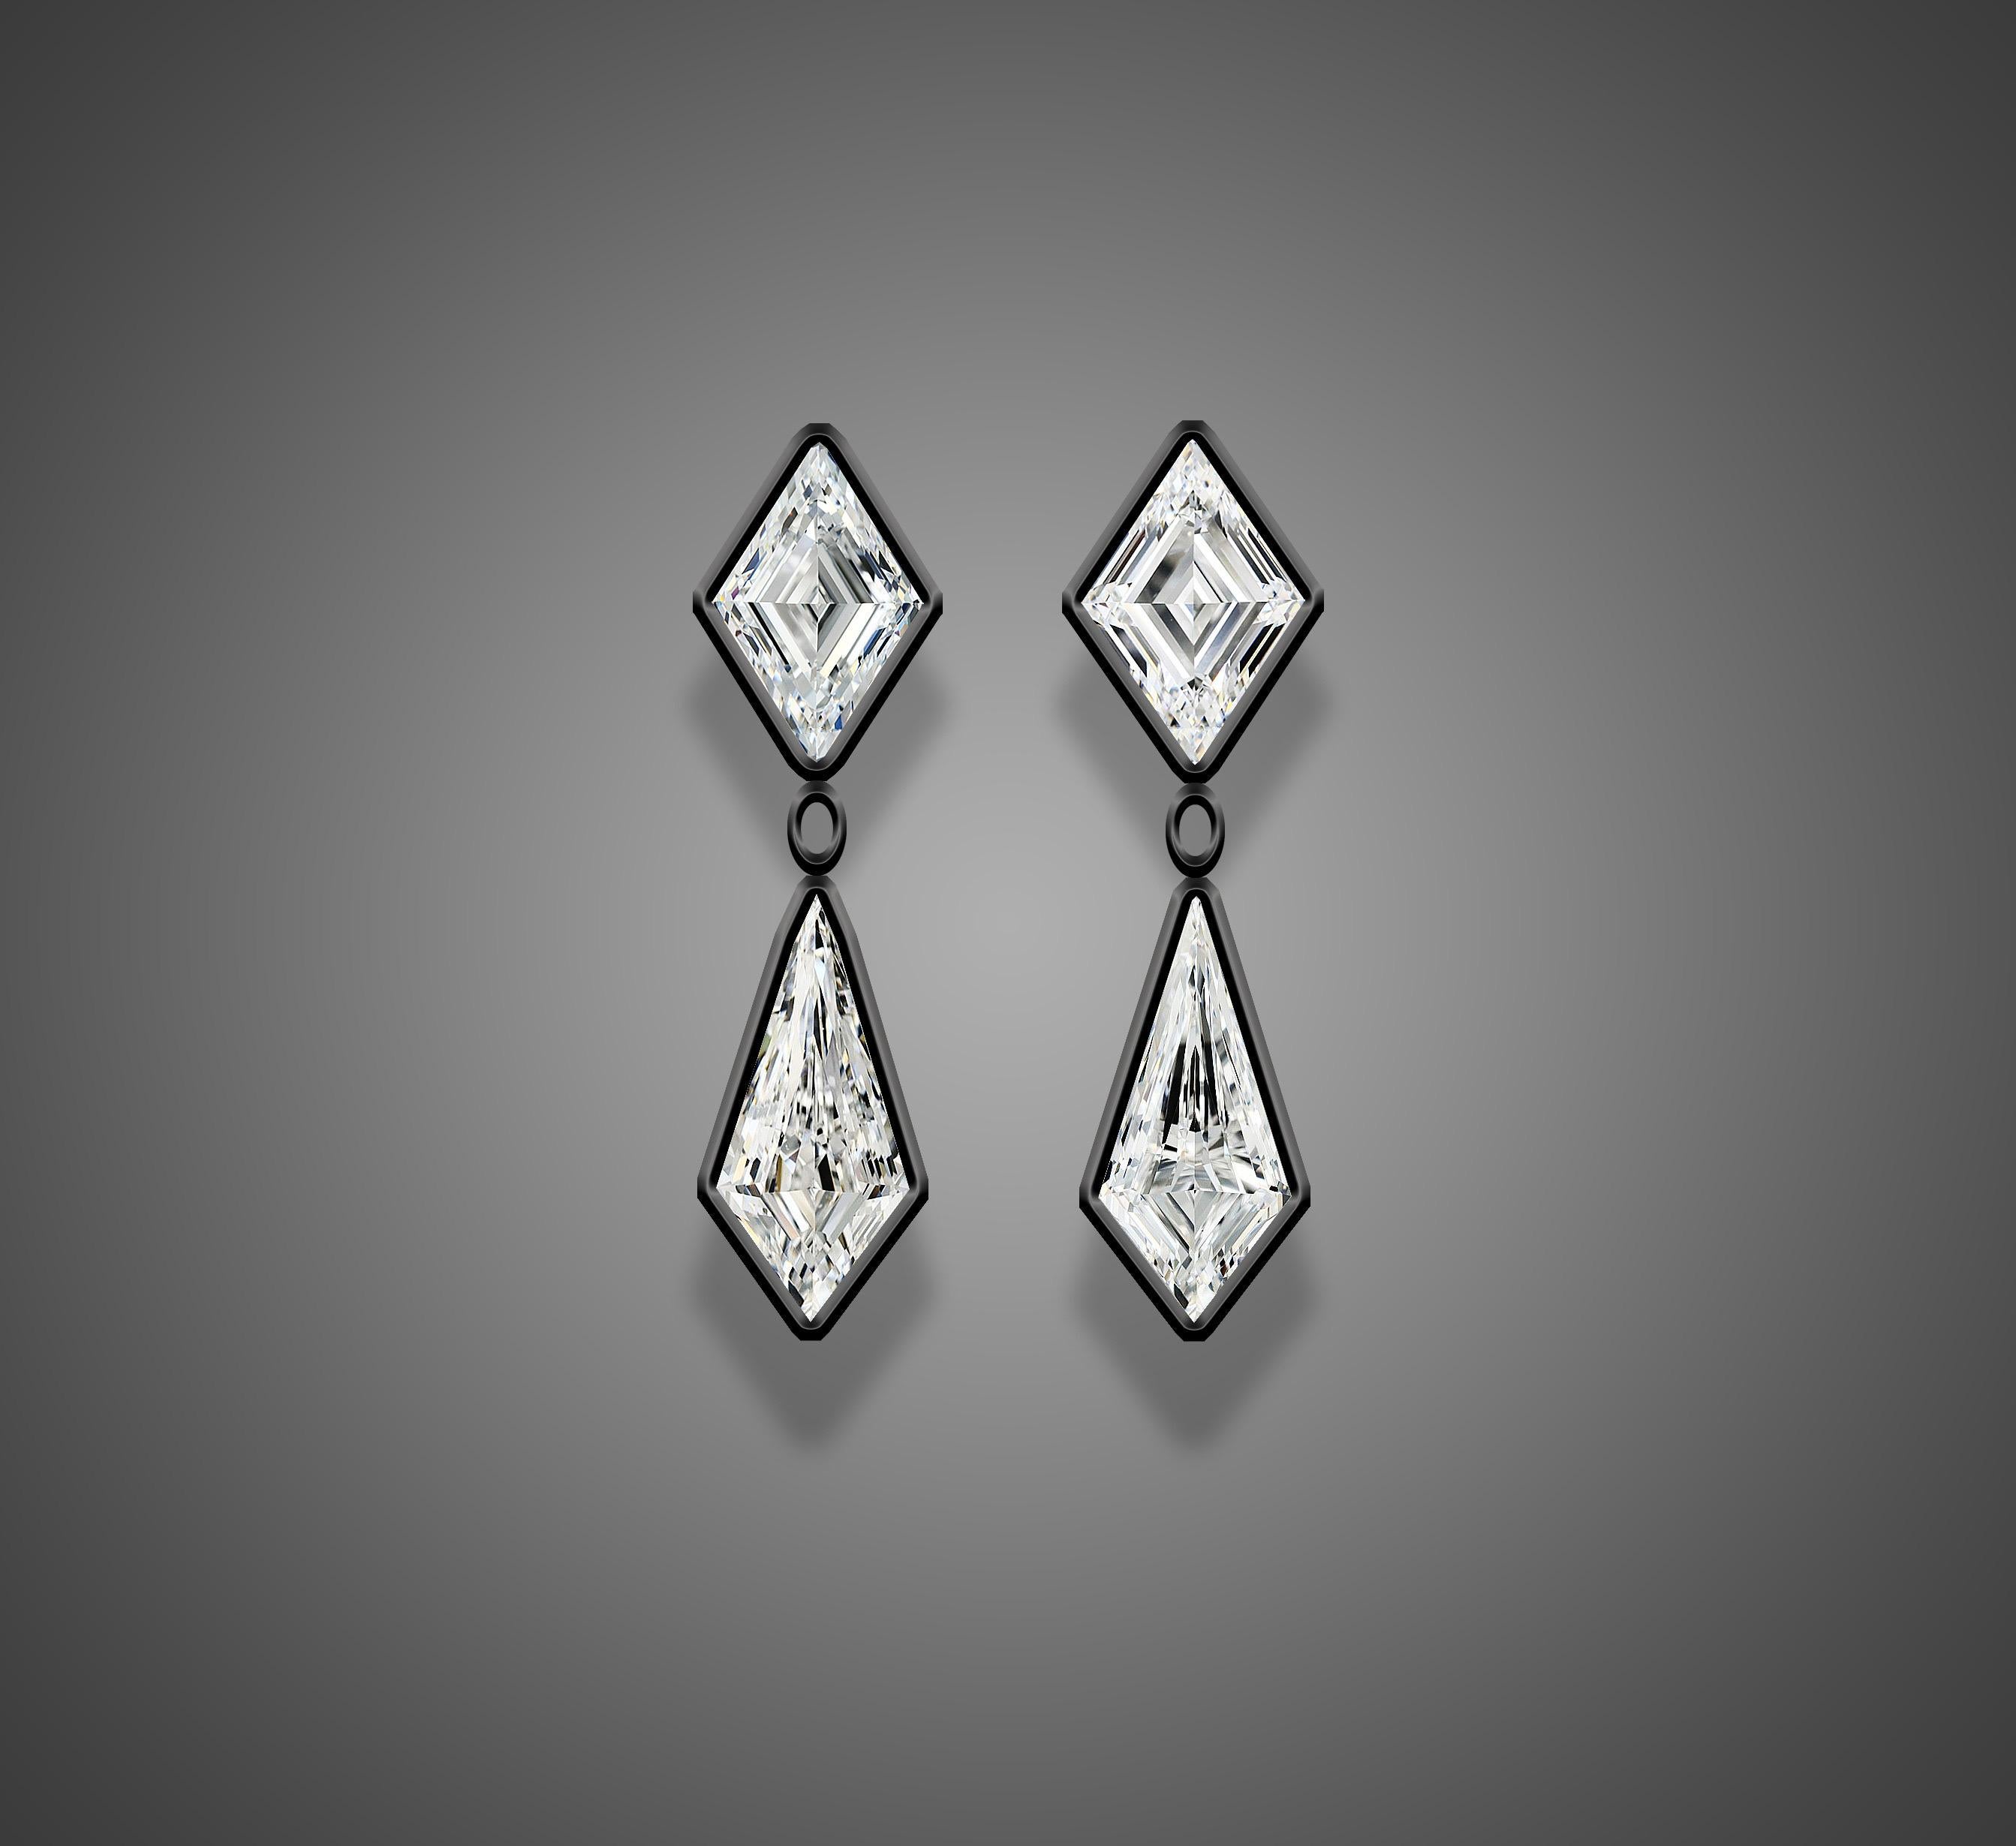 Les détails du diamant sont
DIAMANT LOSANGE
3.20ct / 2pcs
D / VS2
10.58-7.26x3.67mm
10.76-7.15x4.08mm
NON-FNT
certifié GIA

KITE DIAMOND
3,01ct / 2pcs
D / VS1-VS2
13.62-6.11x3.65mm
13.64-6.17x3.47mm
NON-FNT
certifié GIA
Emilio Jewelry, un